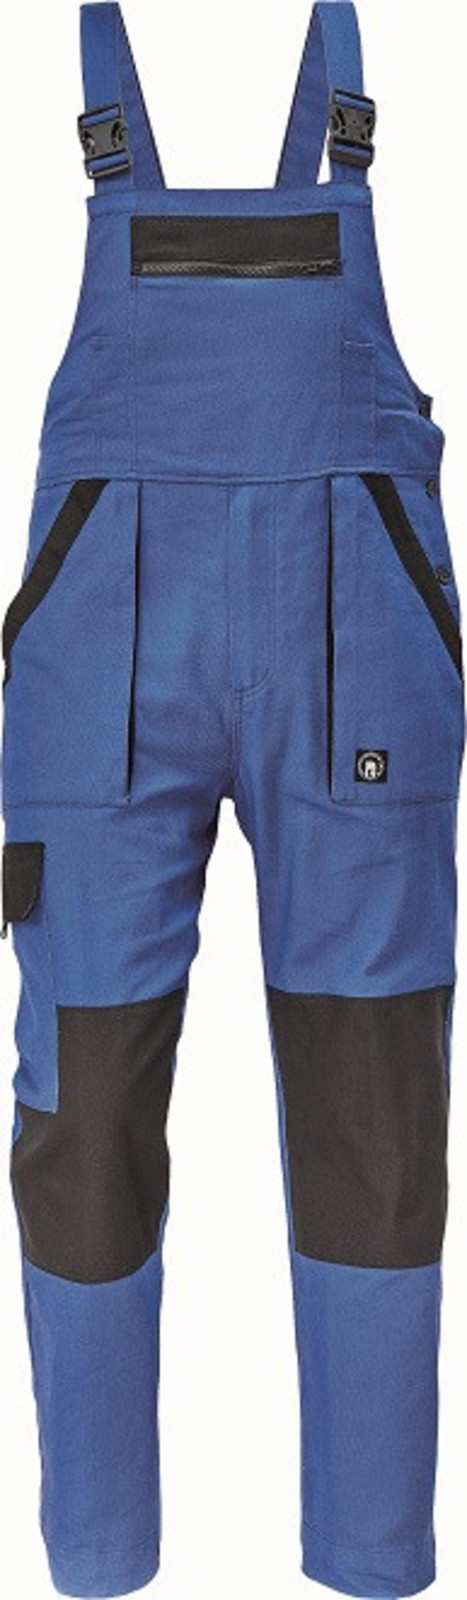 Bavlnené montérky na traky Cerva Max Neo pánske - veľkosť: 50, farba: modrá